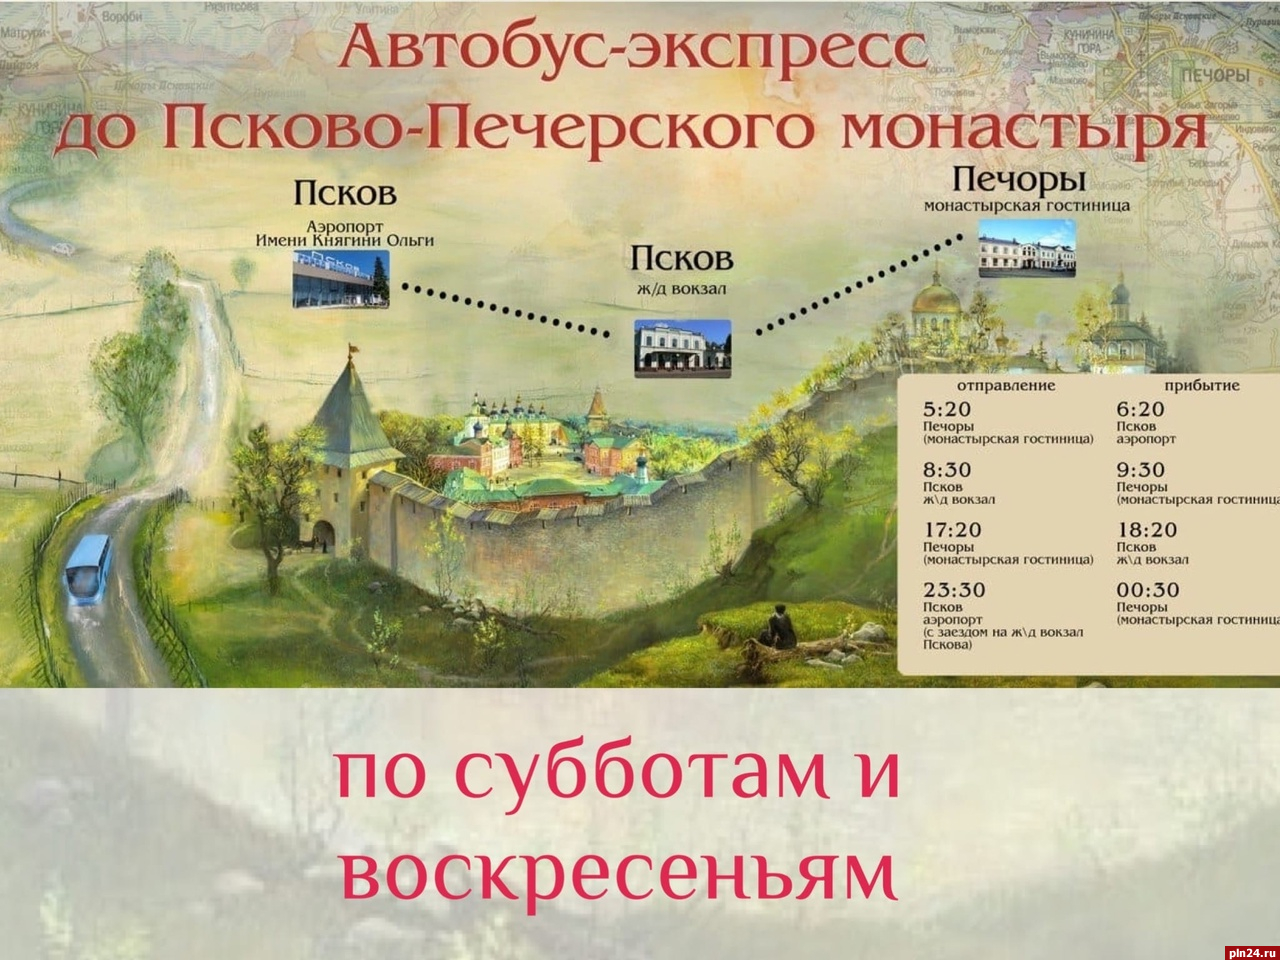 Изменился график движения автобуса-экспресса до Псково-Печерского монастыря